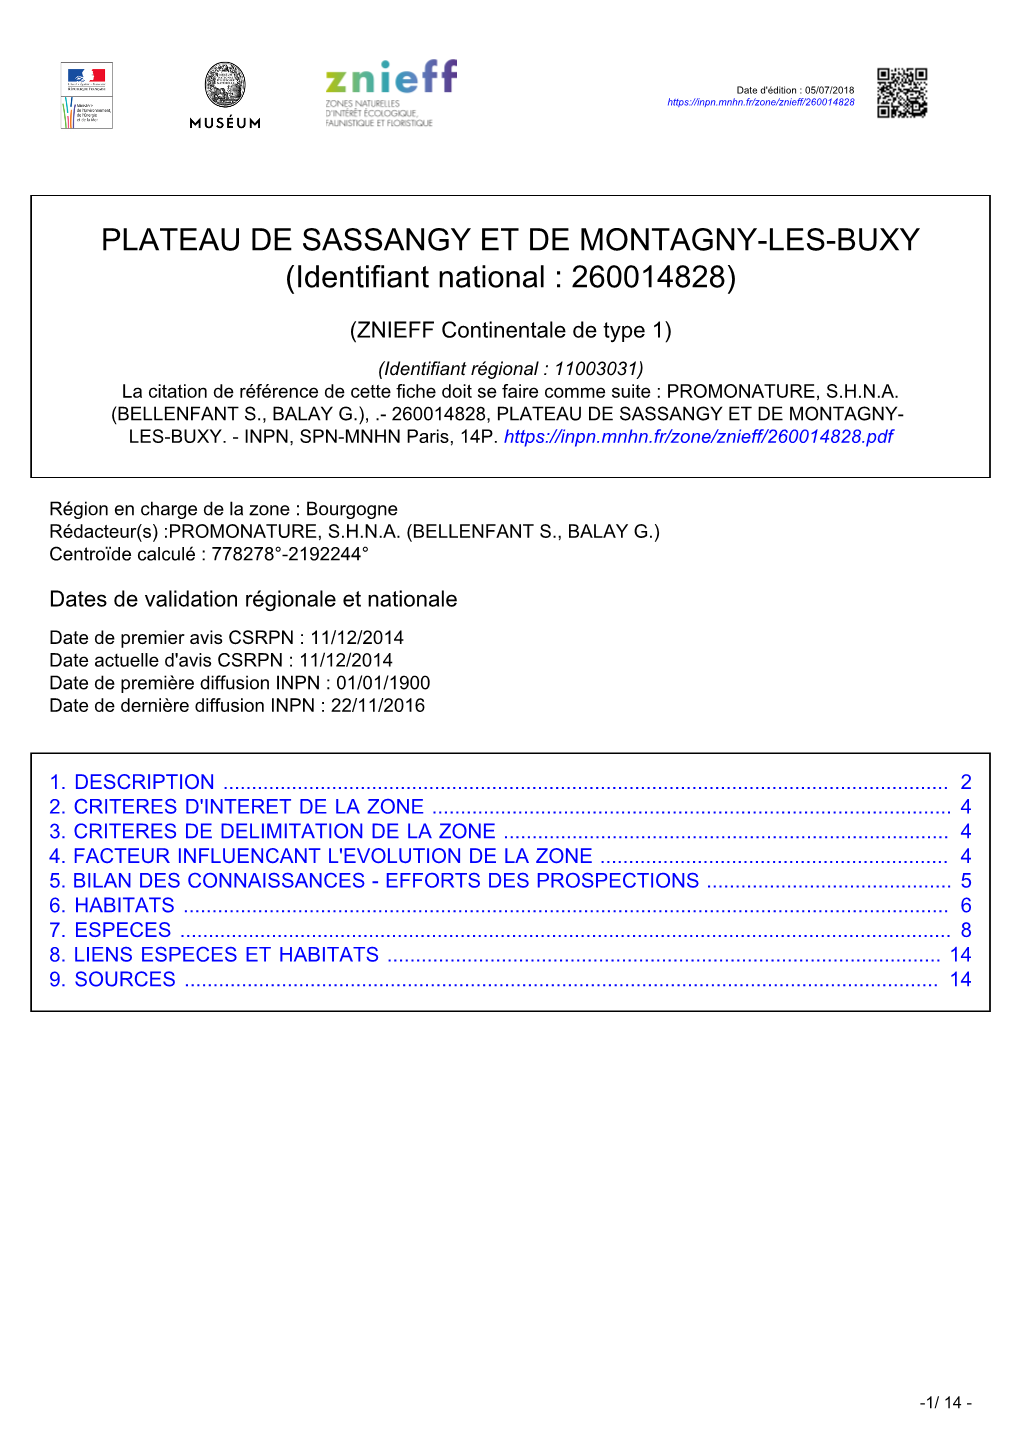 PLATEAU DE SASSANGY ET DE MONTAGNY-LES-BUXY (Identifiant National : 260014828)